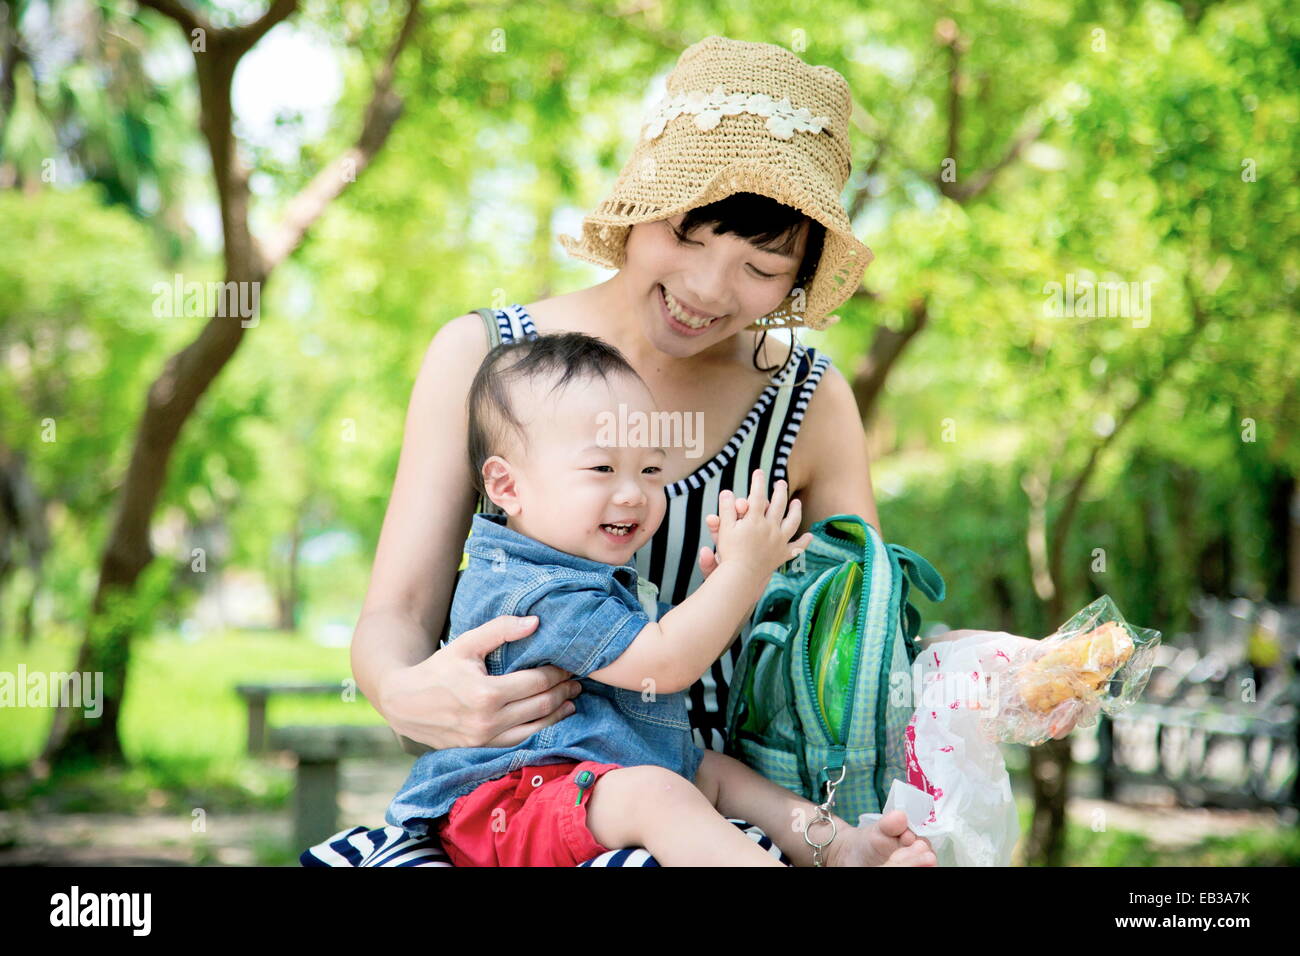 Madre sonriente sentada en el parque con su hijo comiendo pan Foto de stock